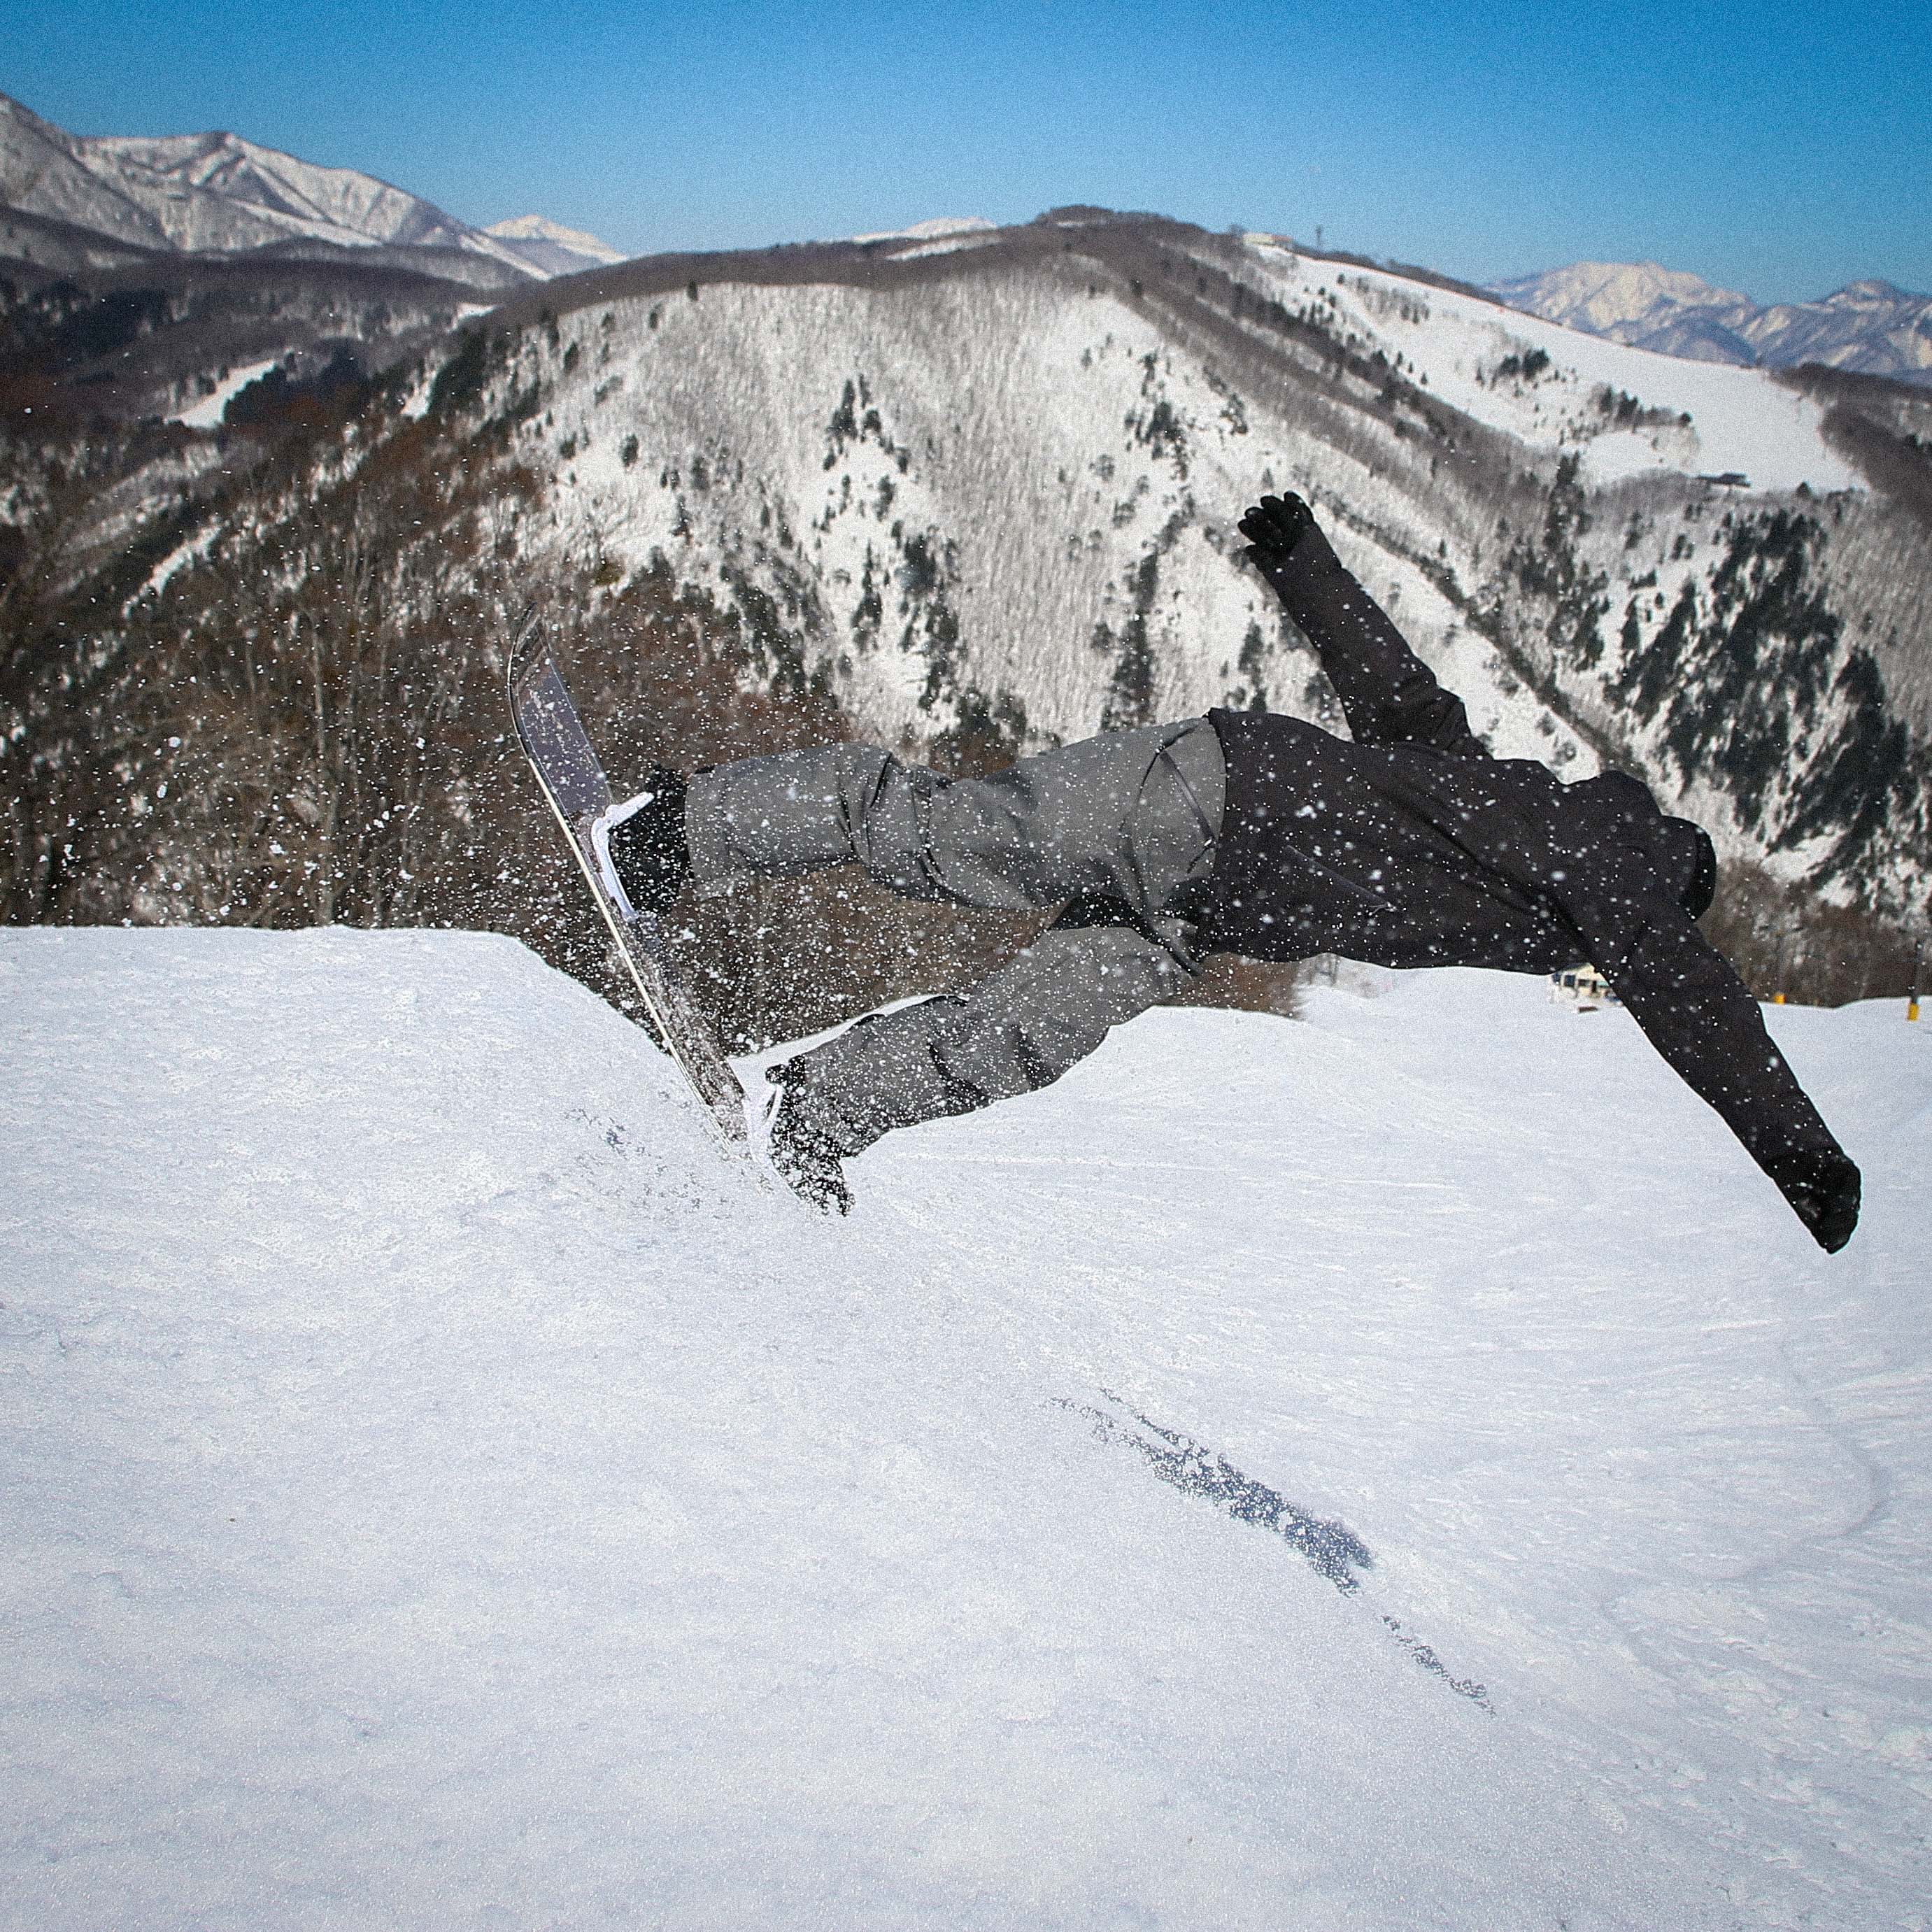 18-19モデル head Snowboards「THE DAY」徹底解説 - USP JAPAN site